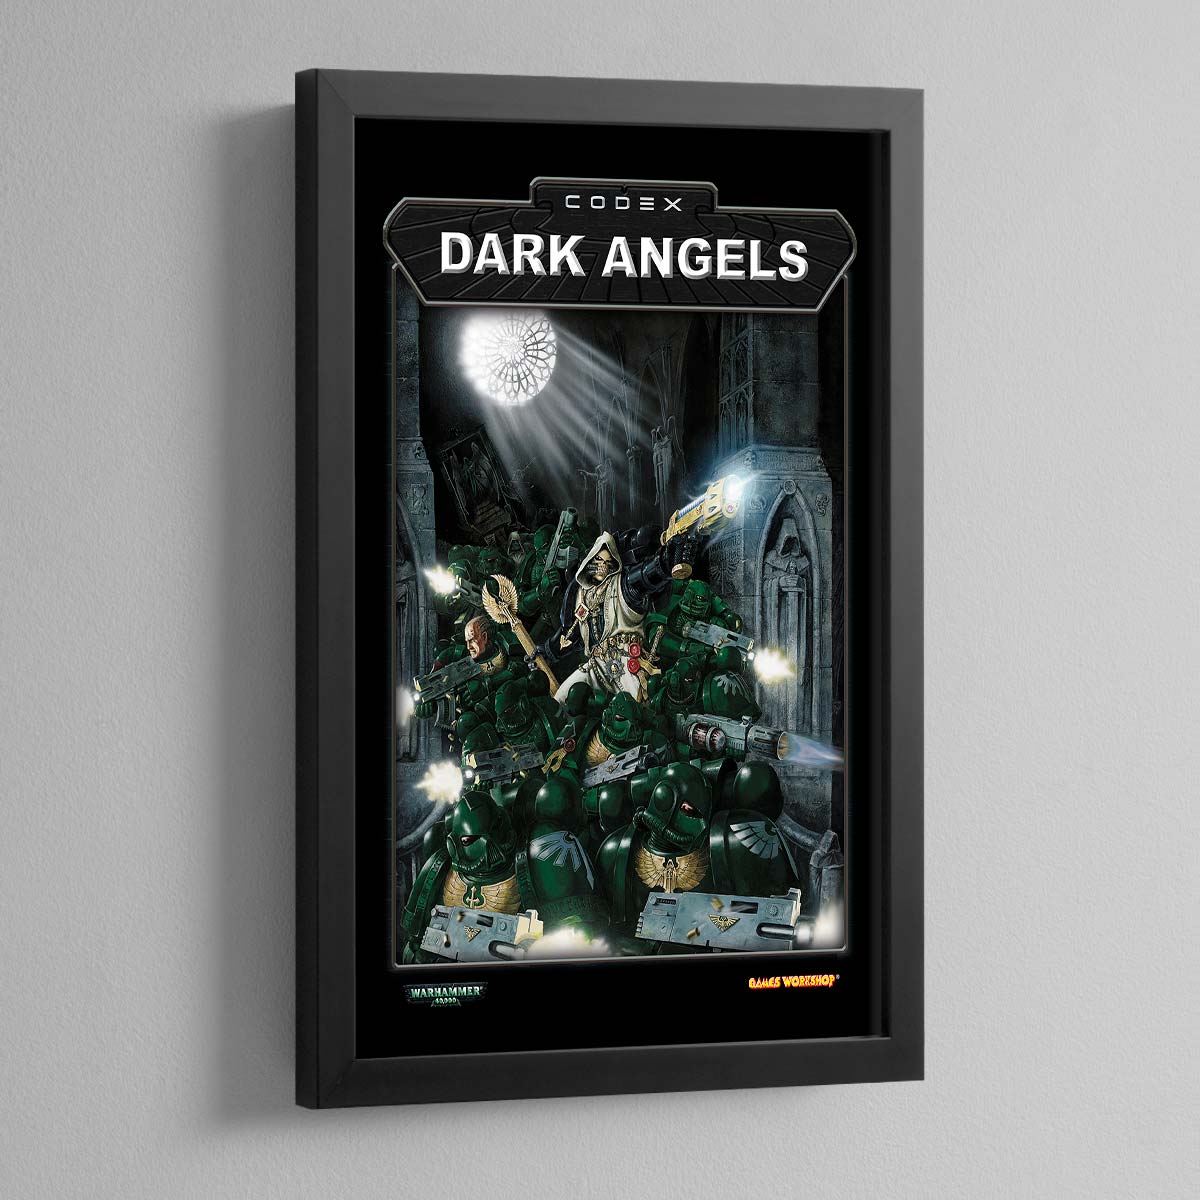 Warhammer 40,000 3rd Edition – Dark Angels – Frame